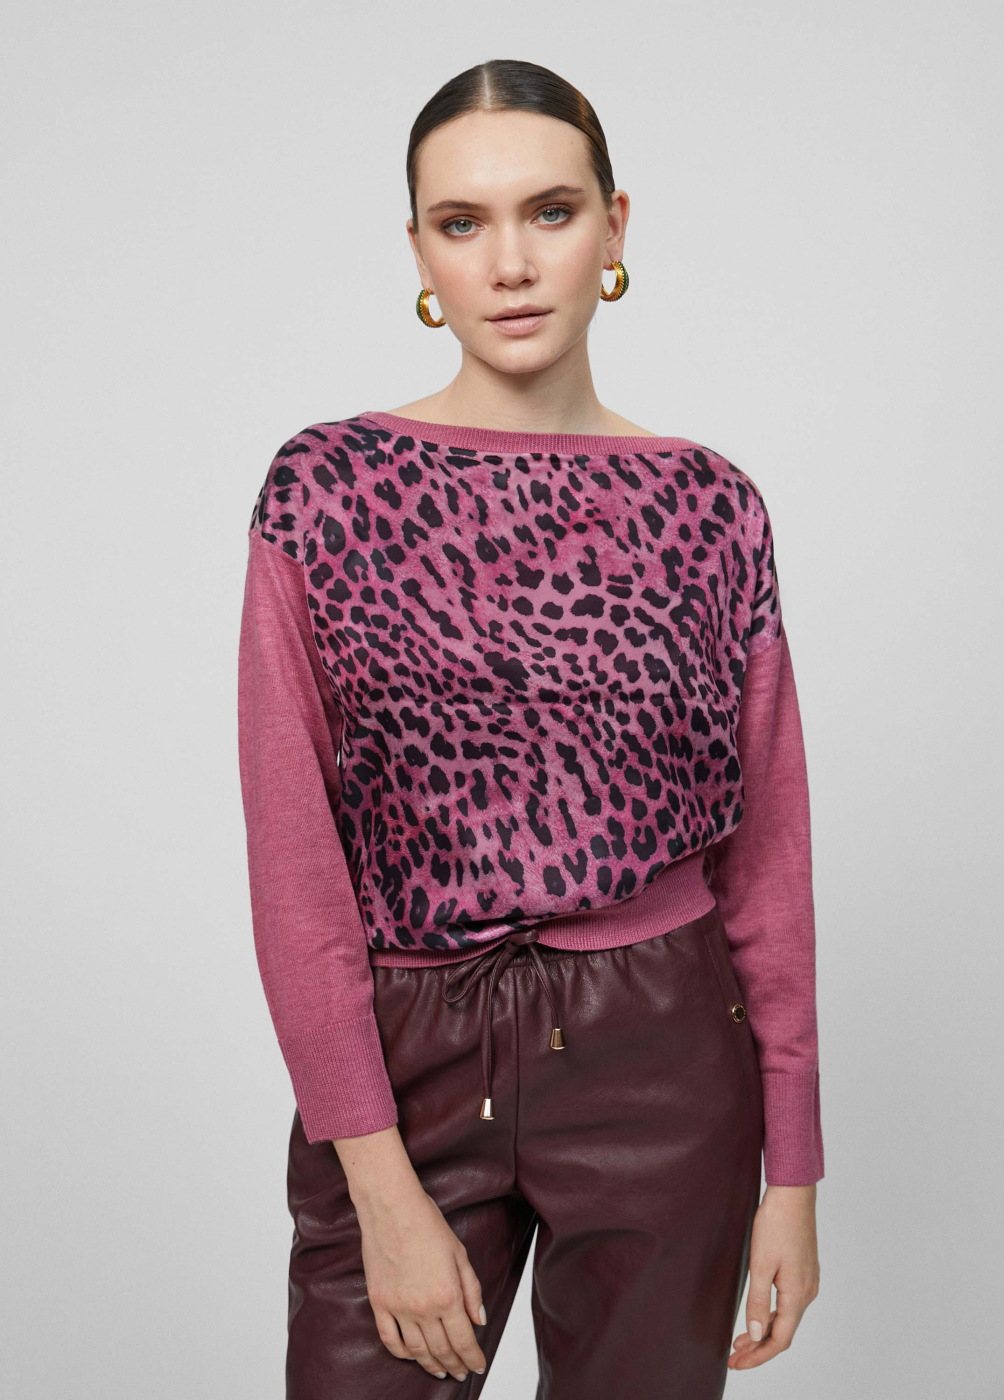 MAITE by  LOLA CASADEMUNT jersey combinado punto y raso con animal print rosa y negro